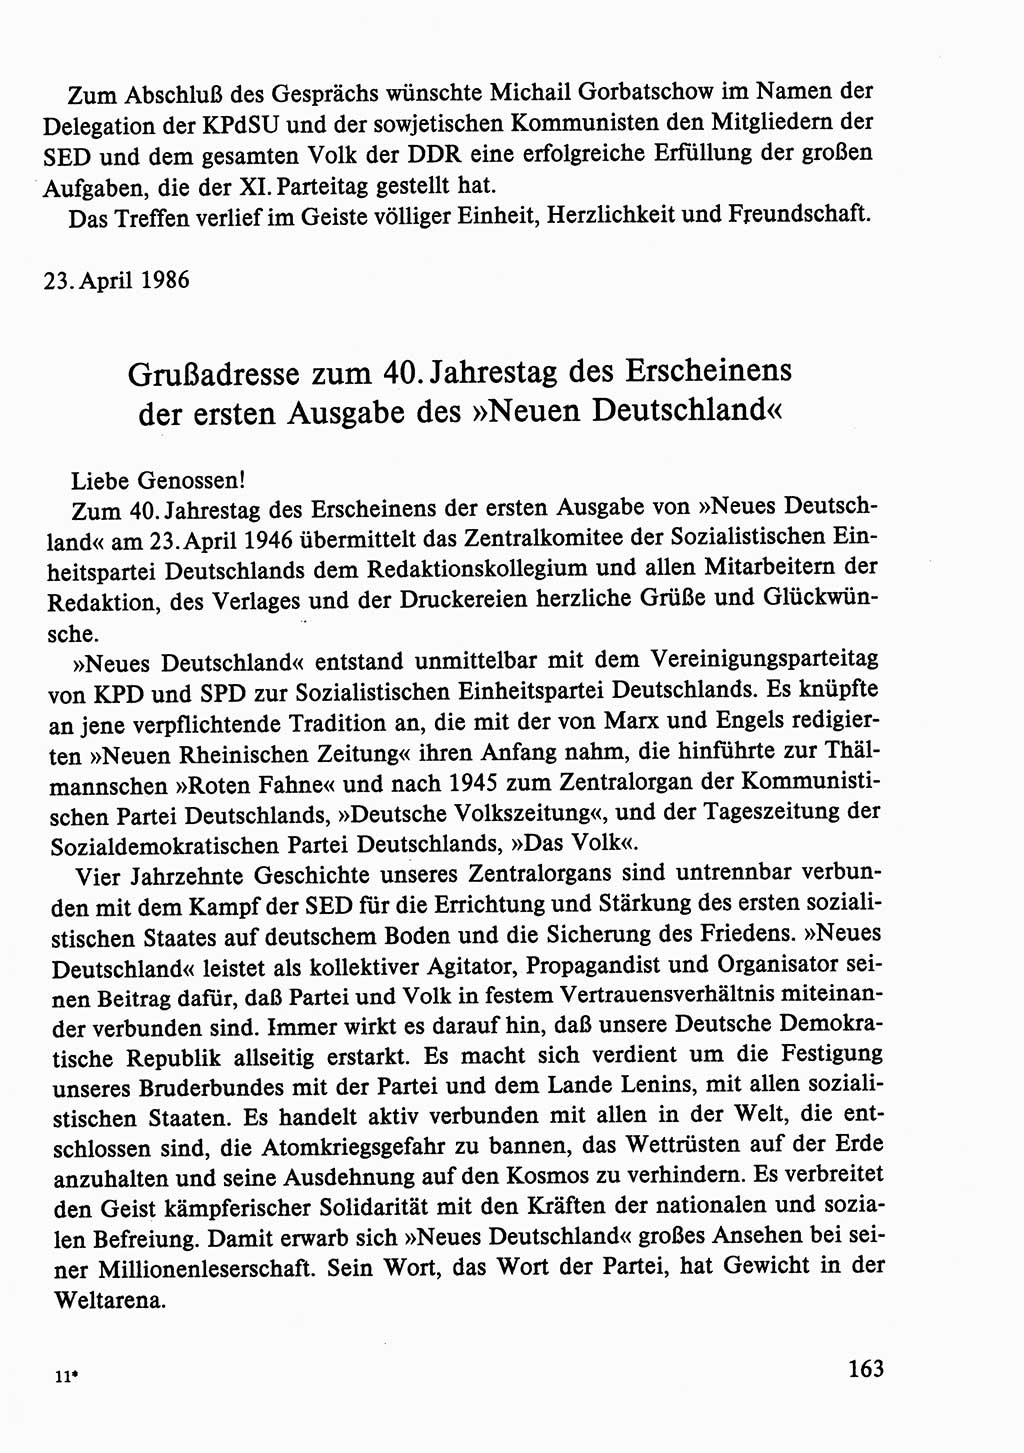 Dokumente der Sozialistischen Einheitspartei Deutschlands (SED) [Deutsche Demokratische Republik (DDR)] 1986-1987, Seite 163 (Dok. SED DDR 1986-1987, S. 163)